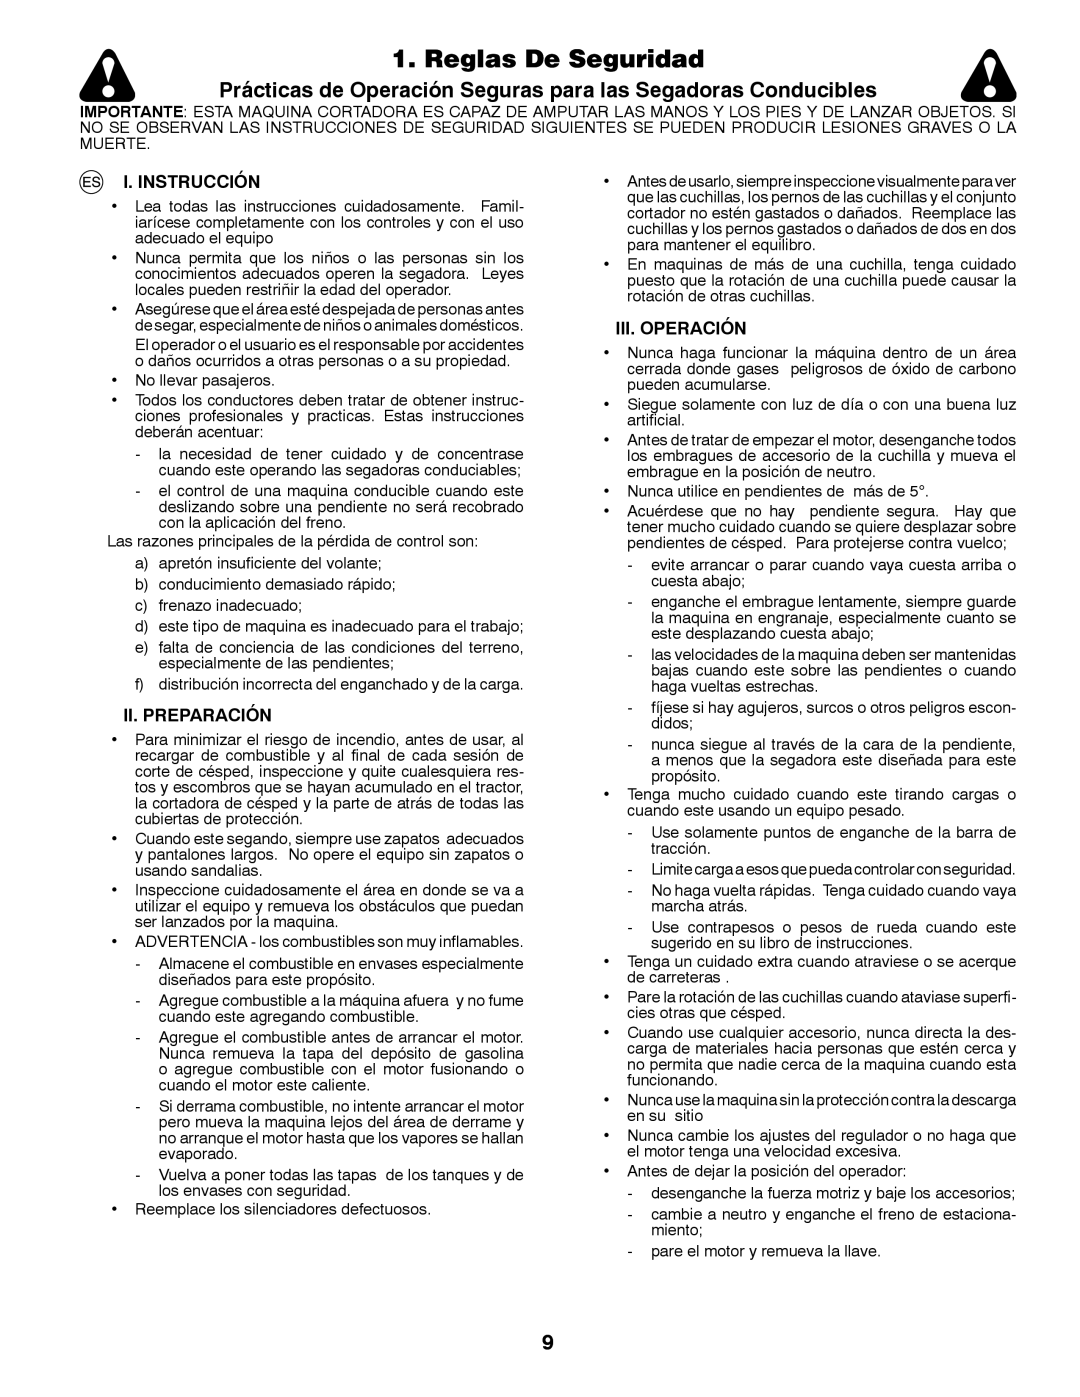 Husqvarna LT126 Reglas De Seguridad, Prácticas de Operación Seguras para las Segadoras Conducibles, I. Instrucción 